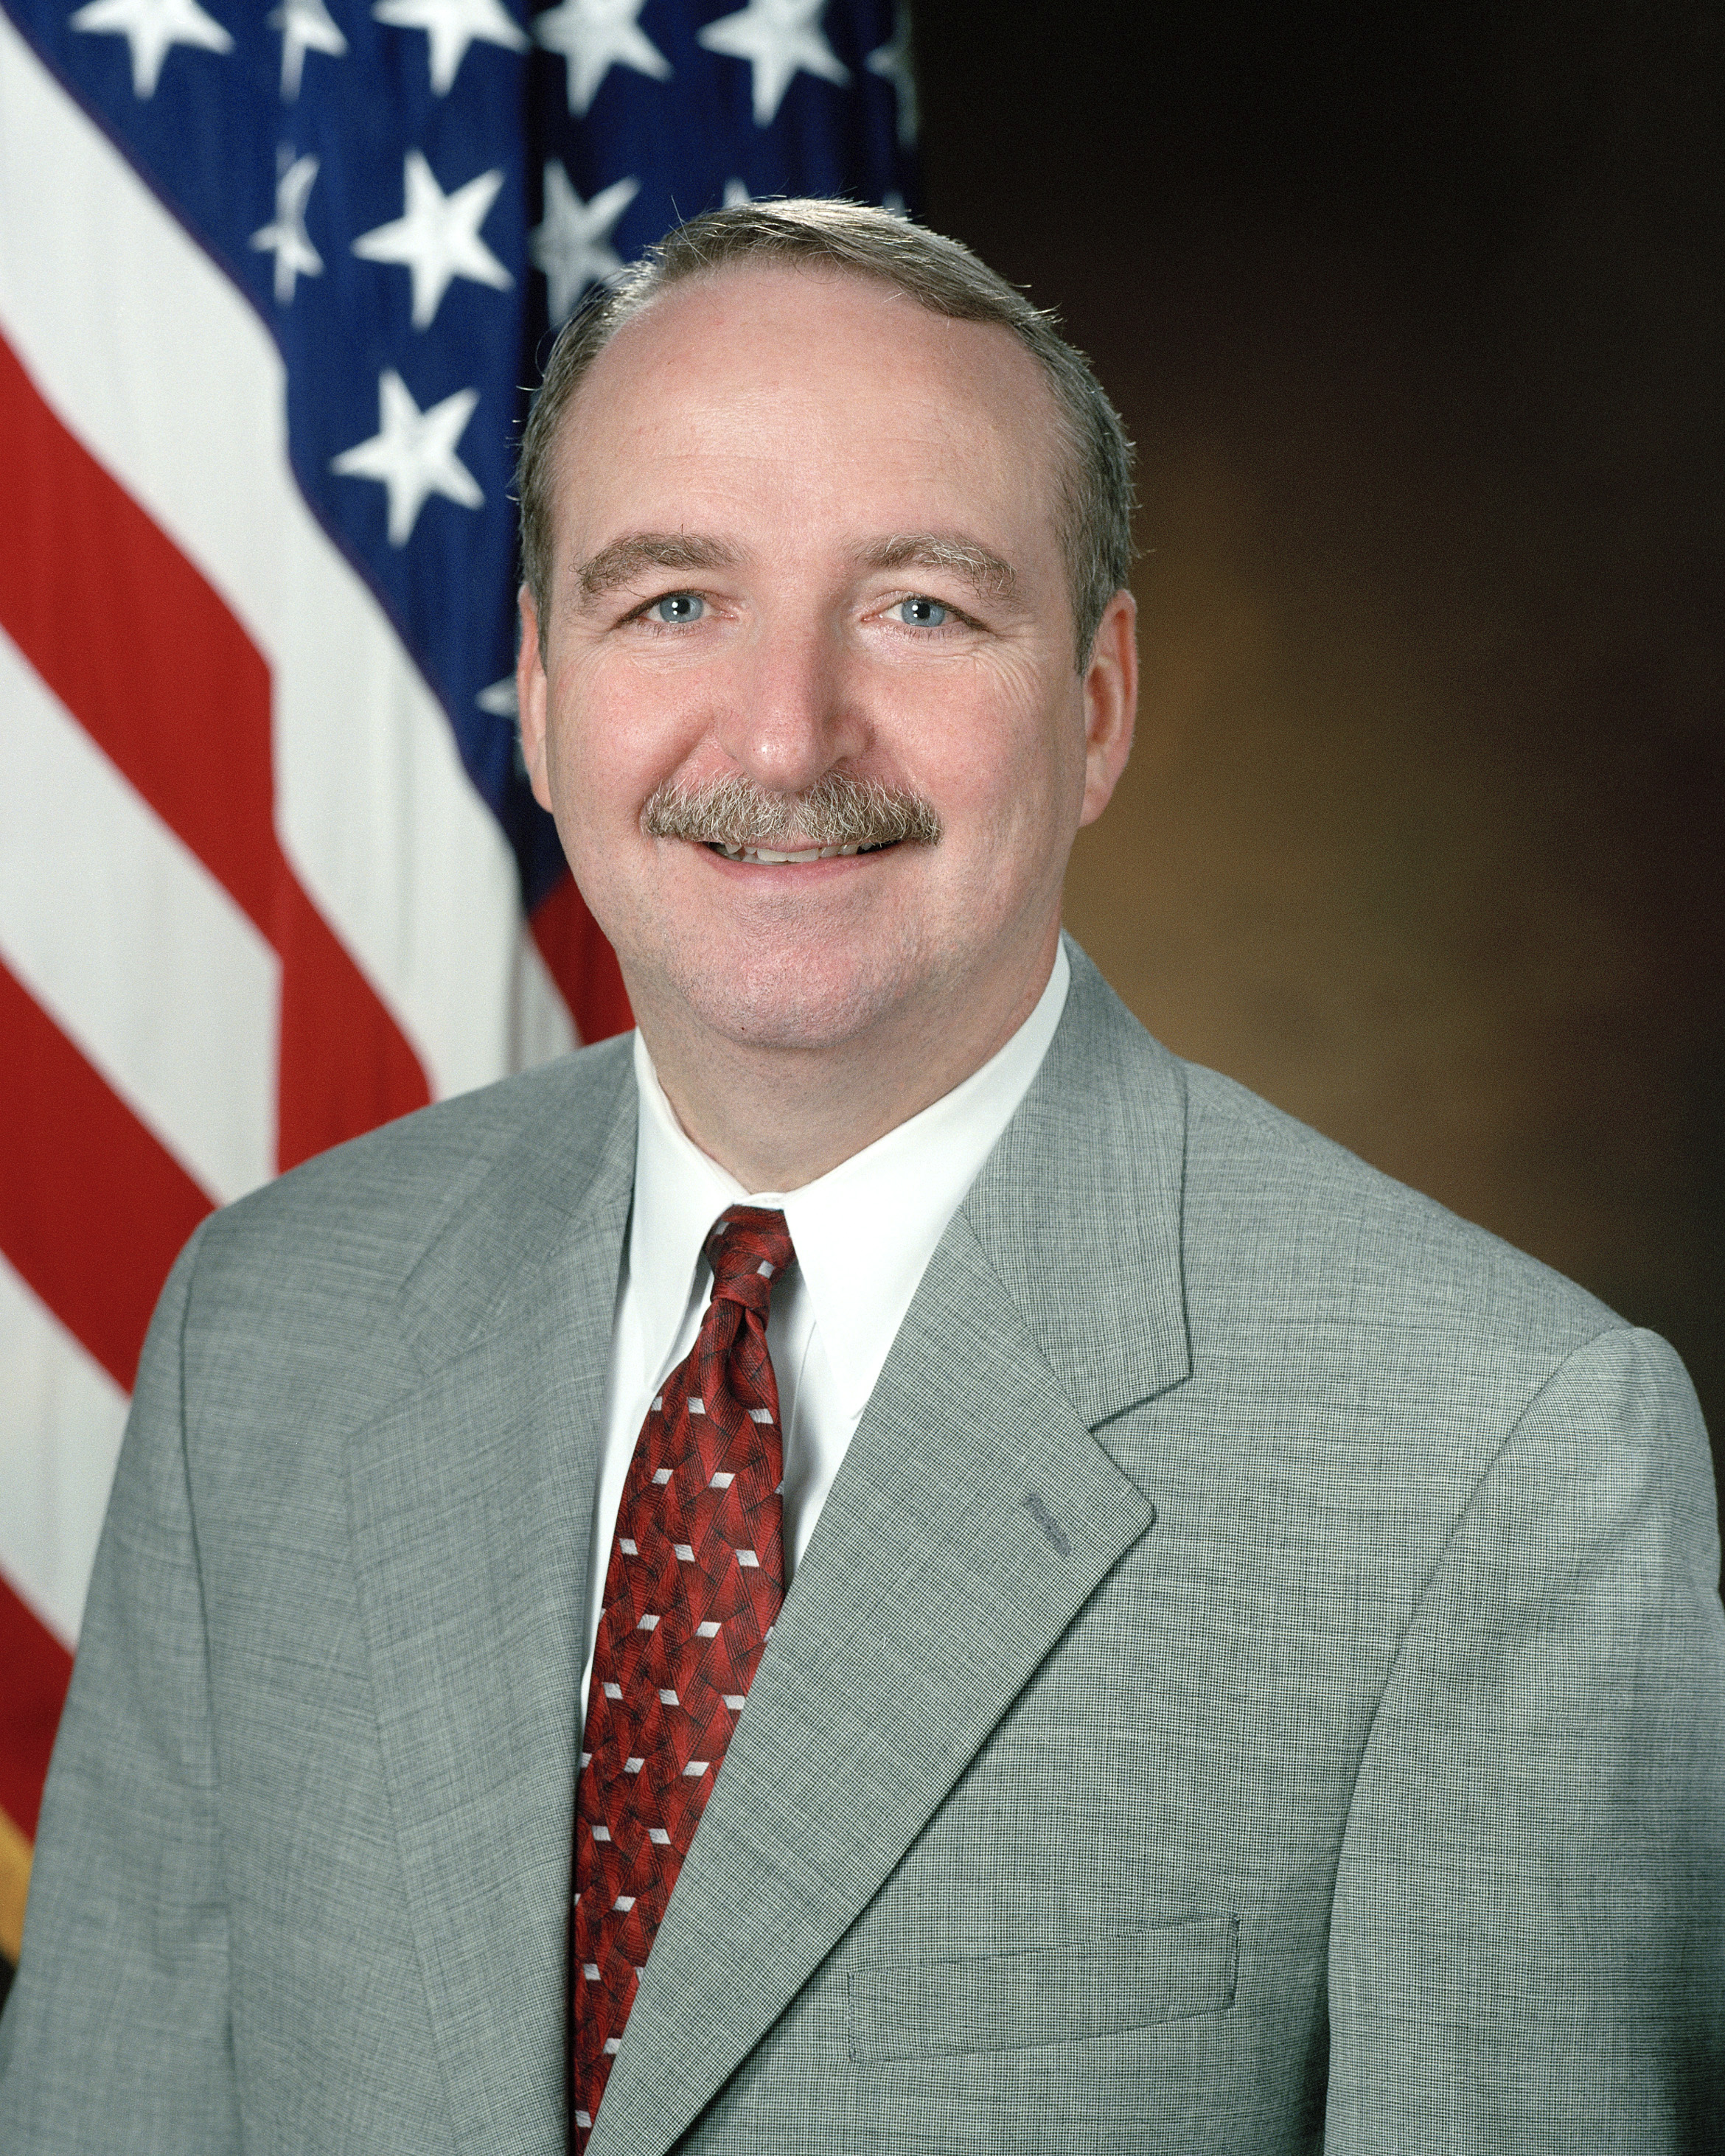 Frank L. Jones in 1999